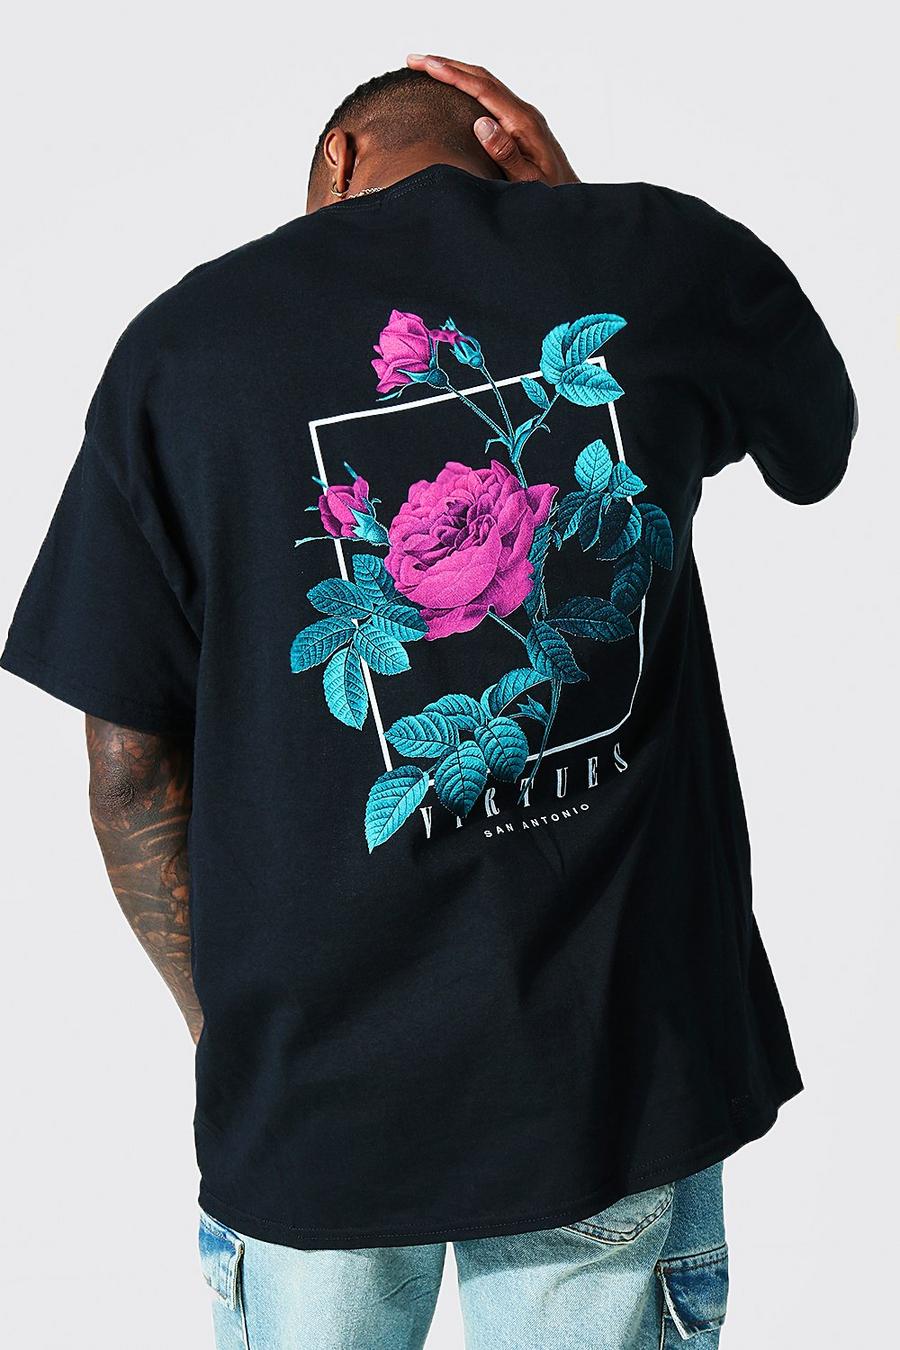 Camiseta oversize con estampado gráfico Virtues, Black negro